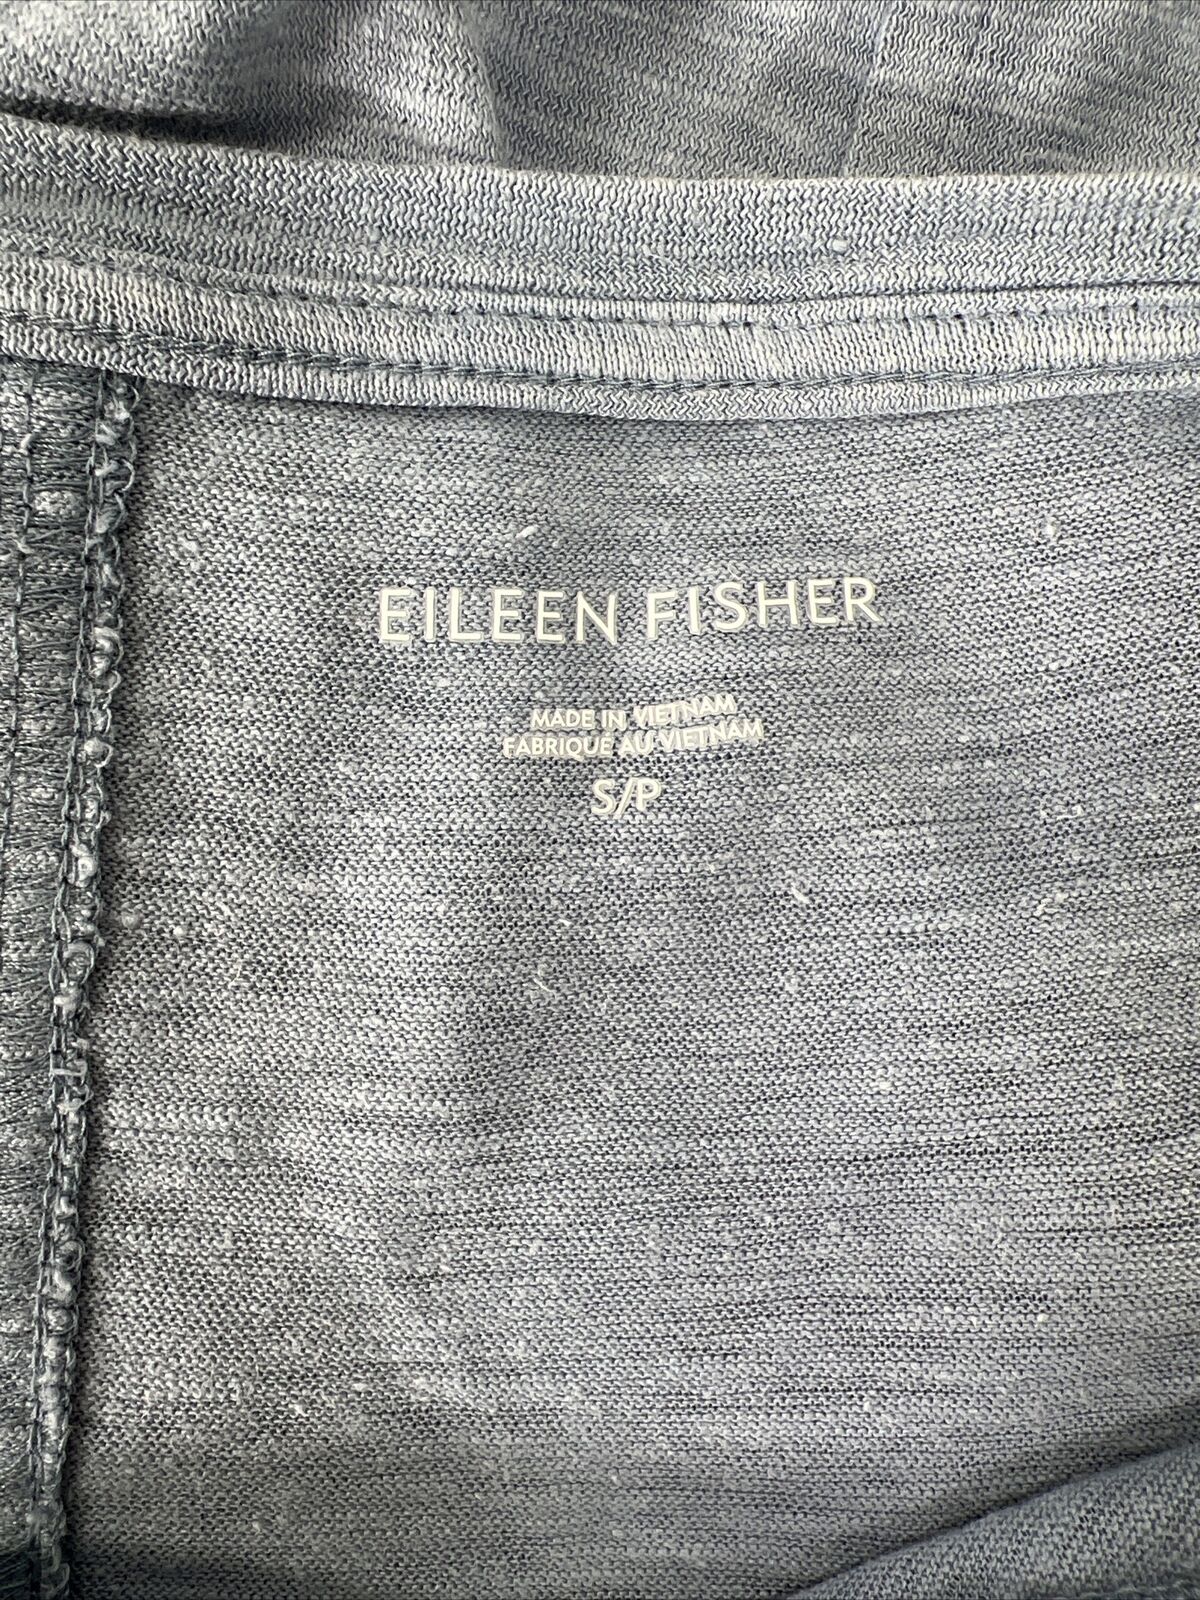 Eileen Fisher Women's Blue Short Sleeve T-Shirt - S